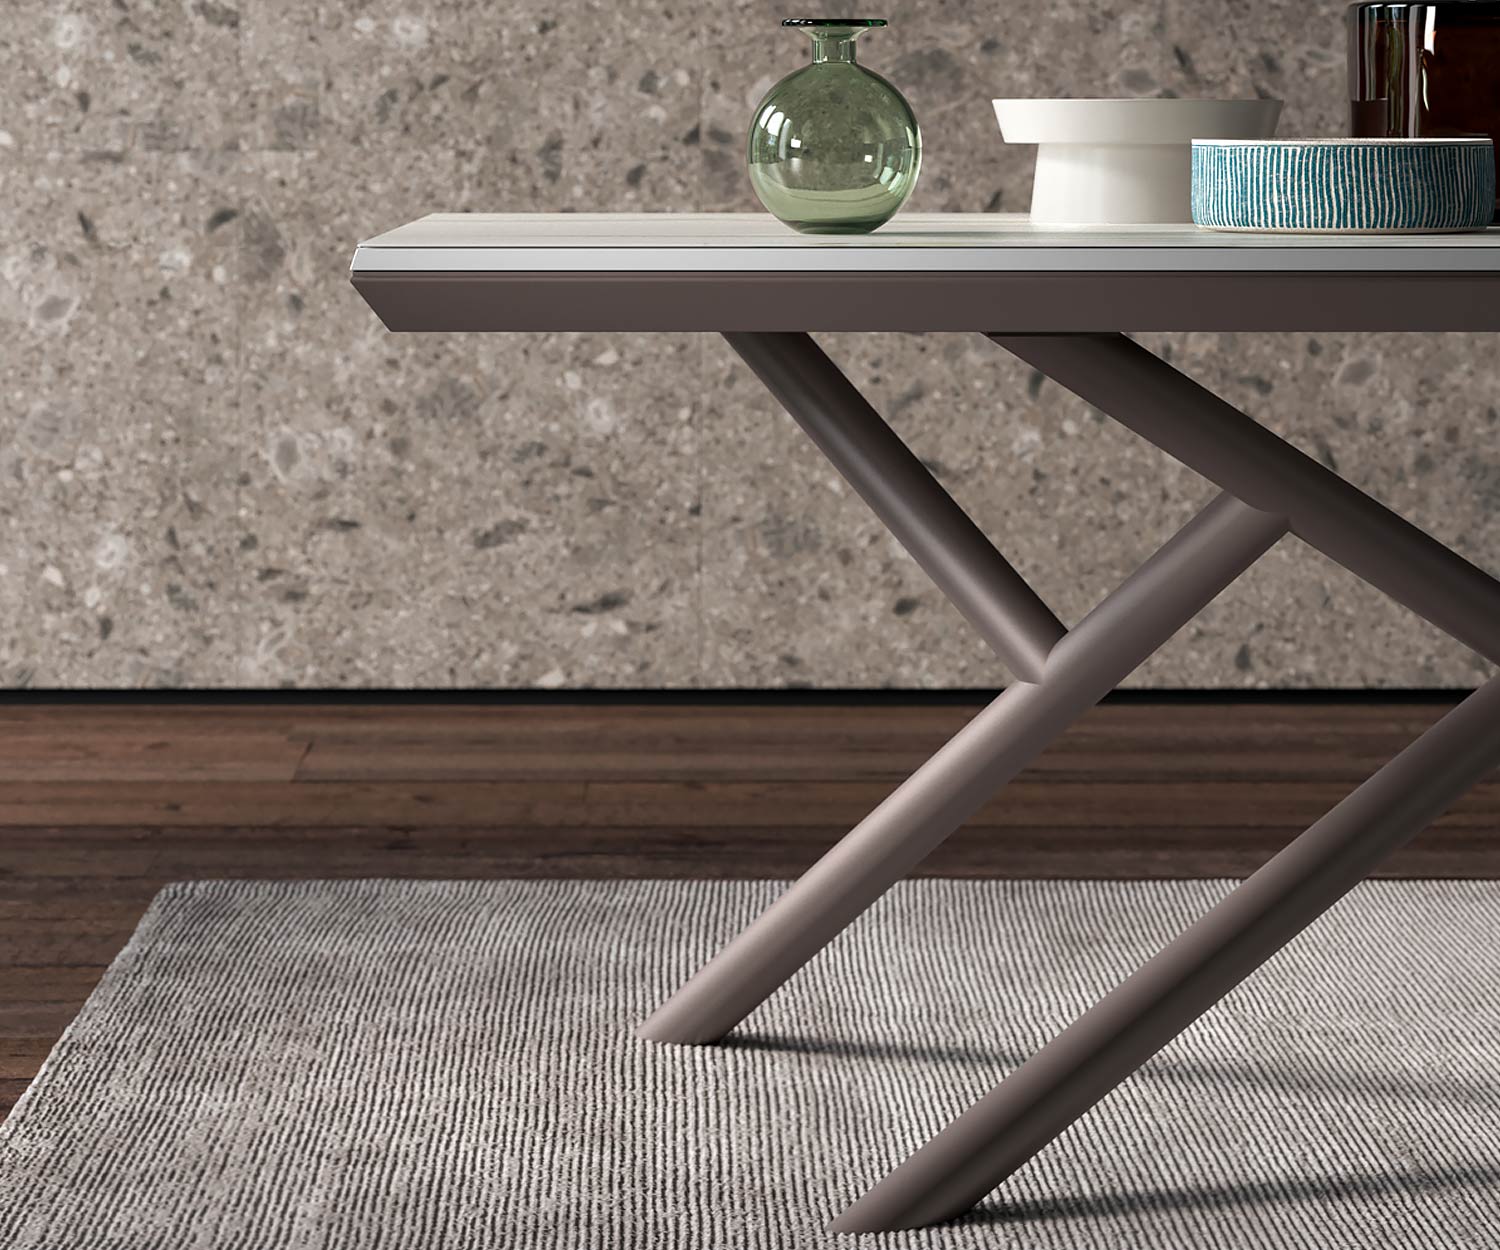 Design Esstisch Detail Standfüße mit Geschirr auf der Tischplatte Gestell in Matt Bronze